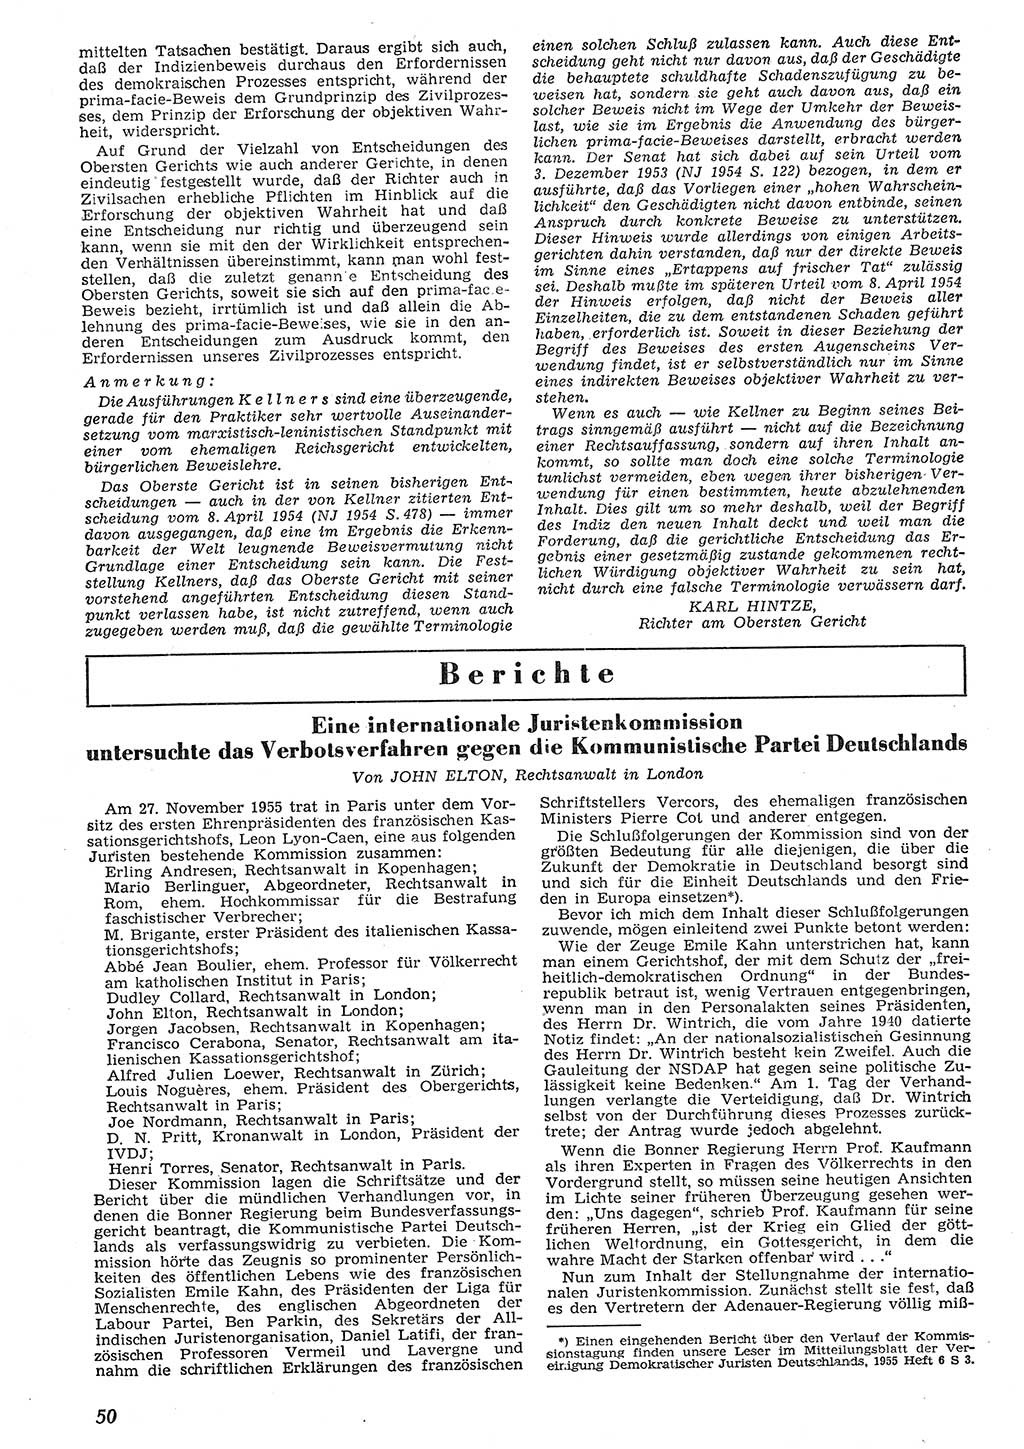 Neue Justiz (NJ), Zeitschrift für Recht und Rechtswissenschaft [Deutsche Demokratische Republik (DDR)], 10. Jahrgang 1956, Seite 50 (NJ DDR 1956, S. 50)